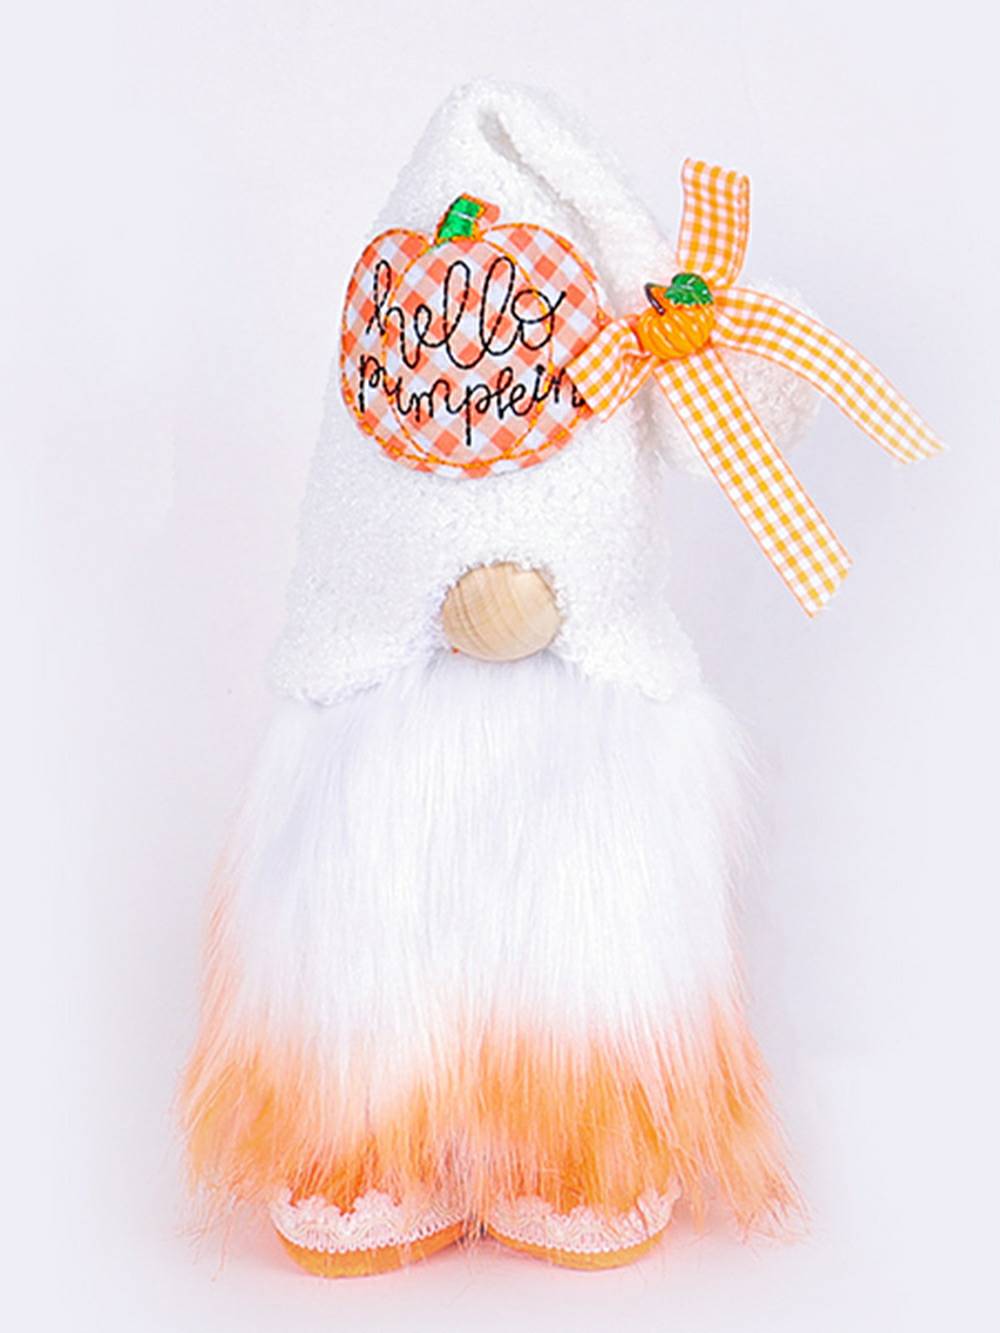 Decorazione natalizia con figura in piedi di bambola senza volto